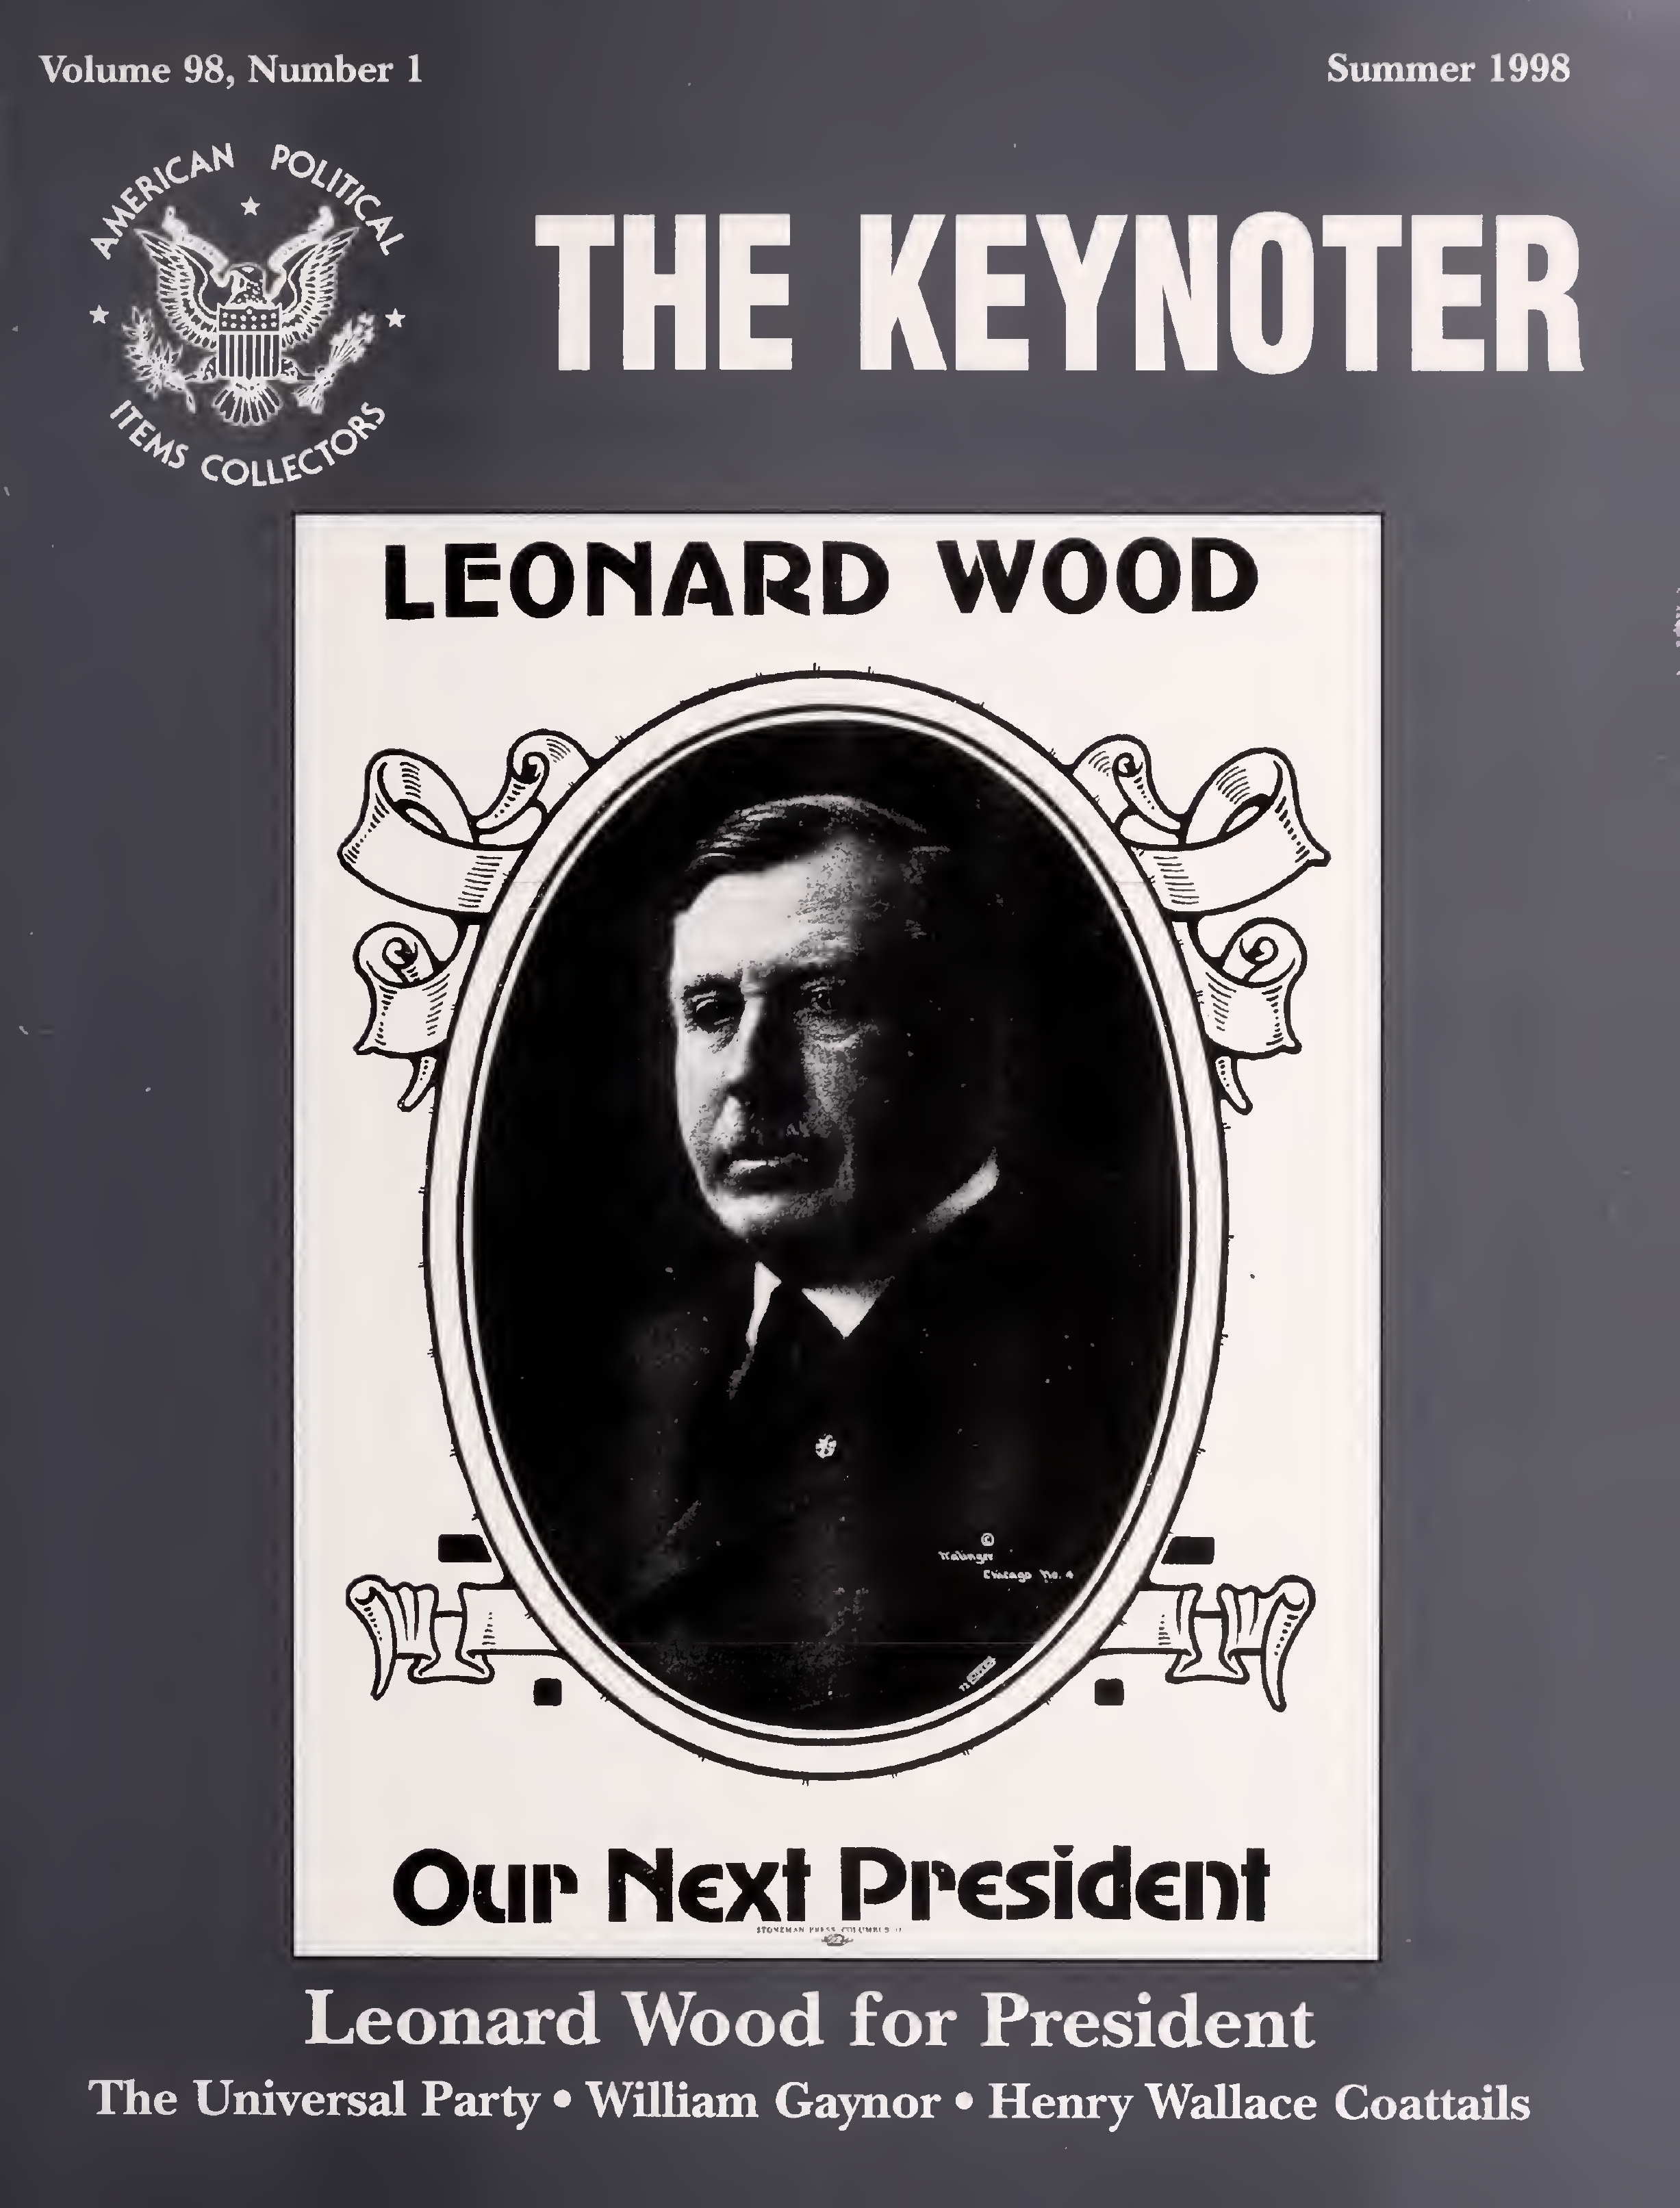 Keynoter 1998 - Summer - Issue 1